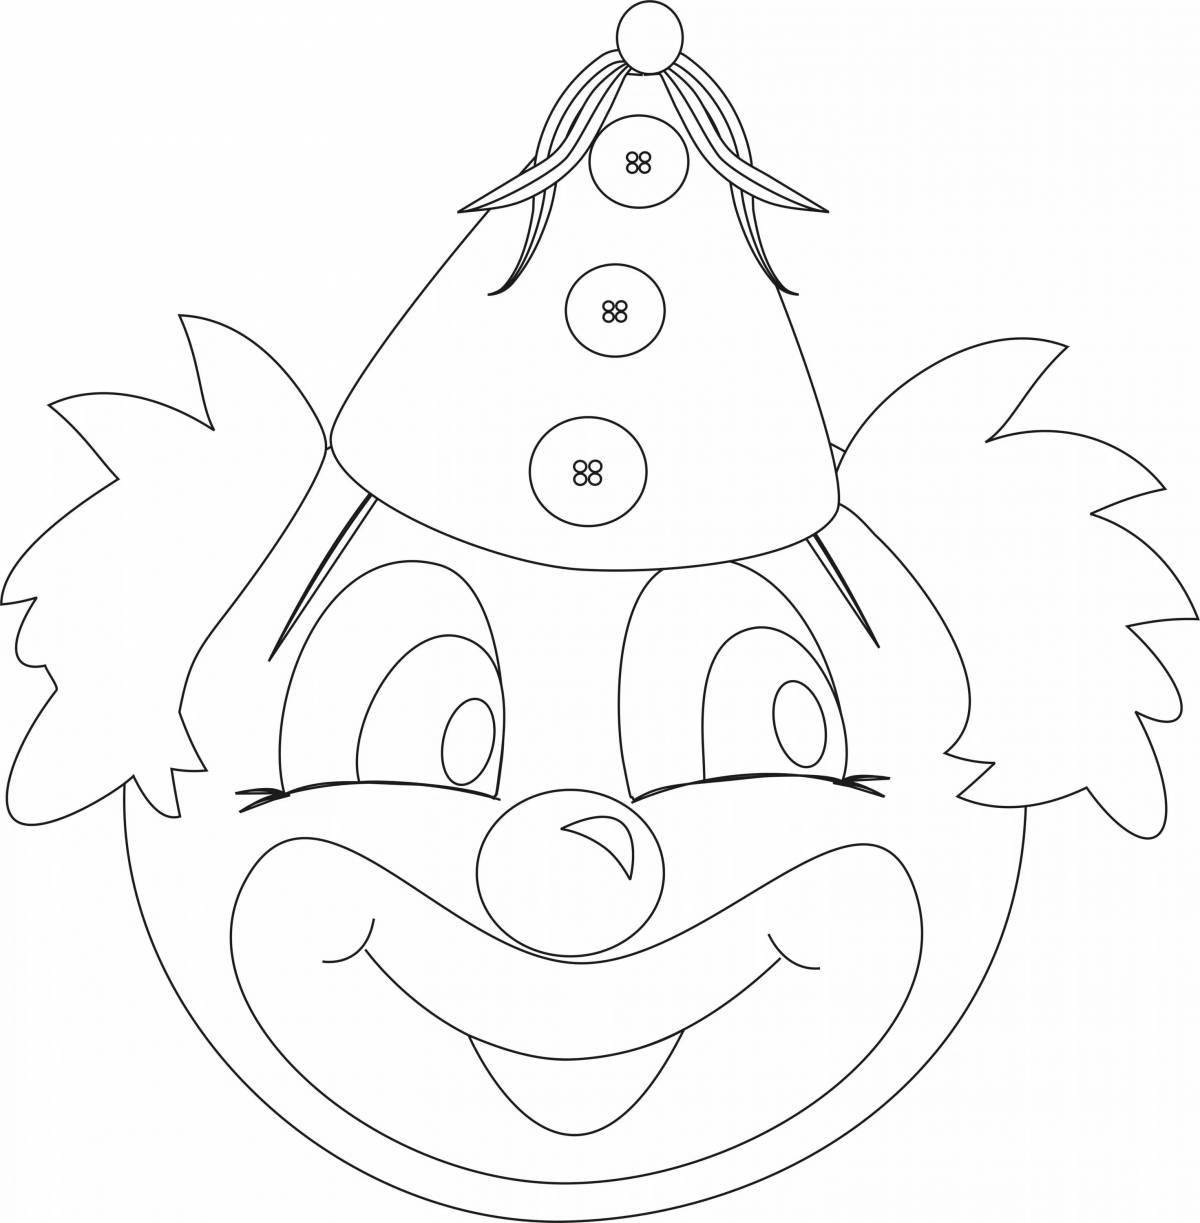 Яркая страница раскраски лица клоуна для детей